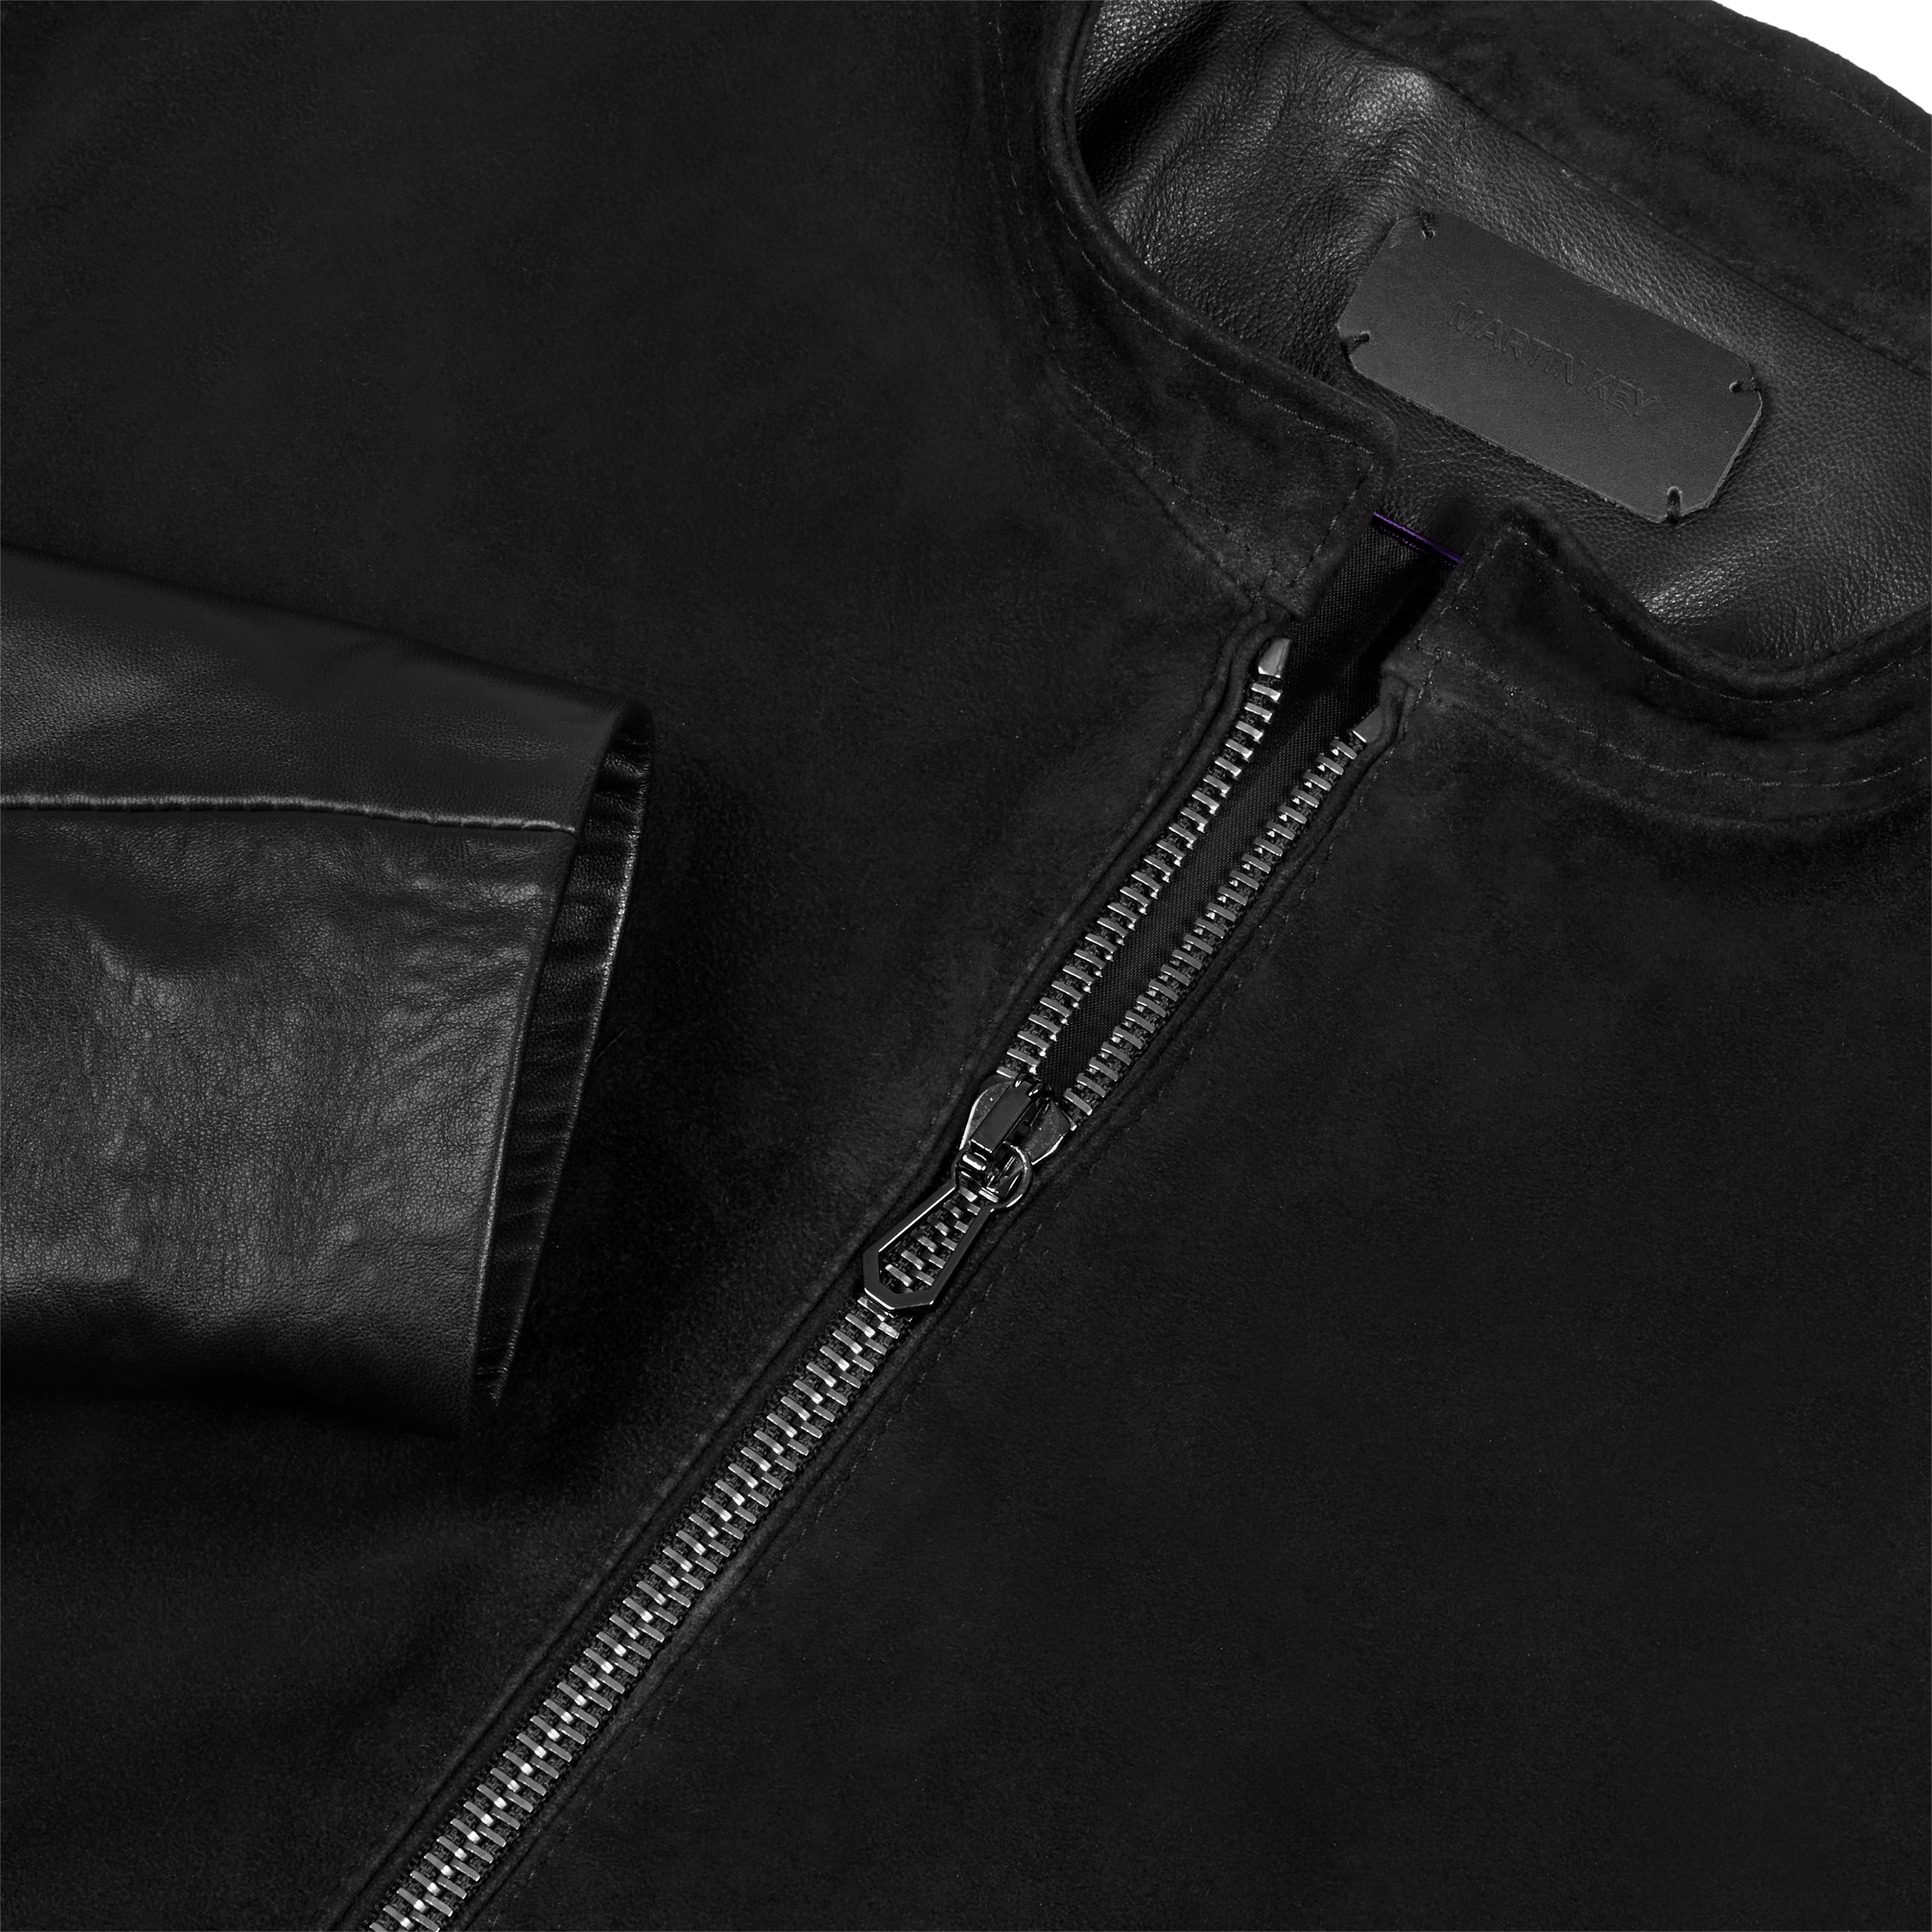 Leather jacket - Östermalm by Martin Key